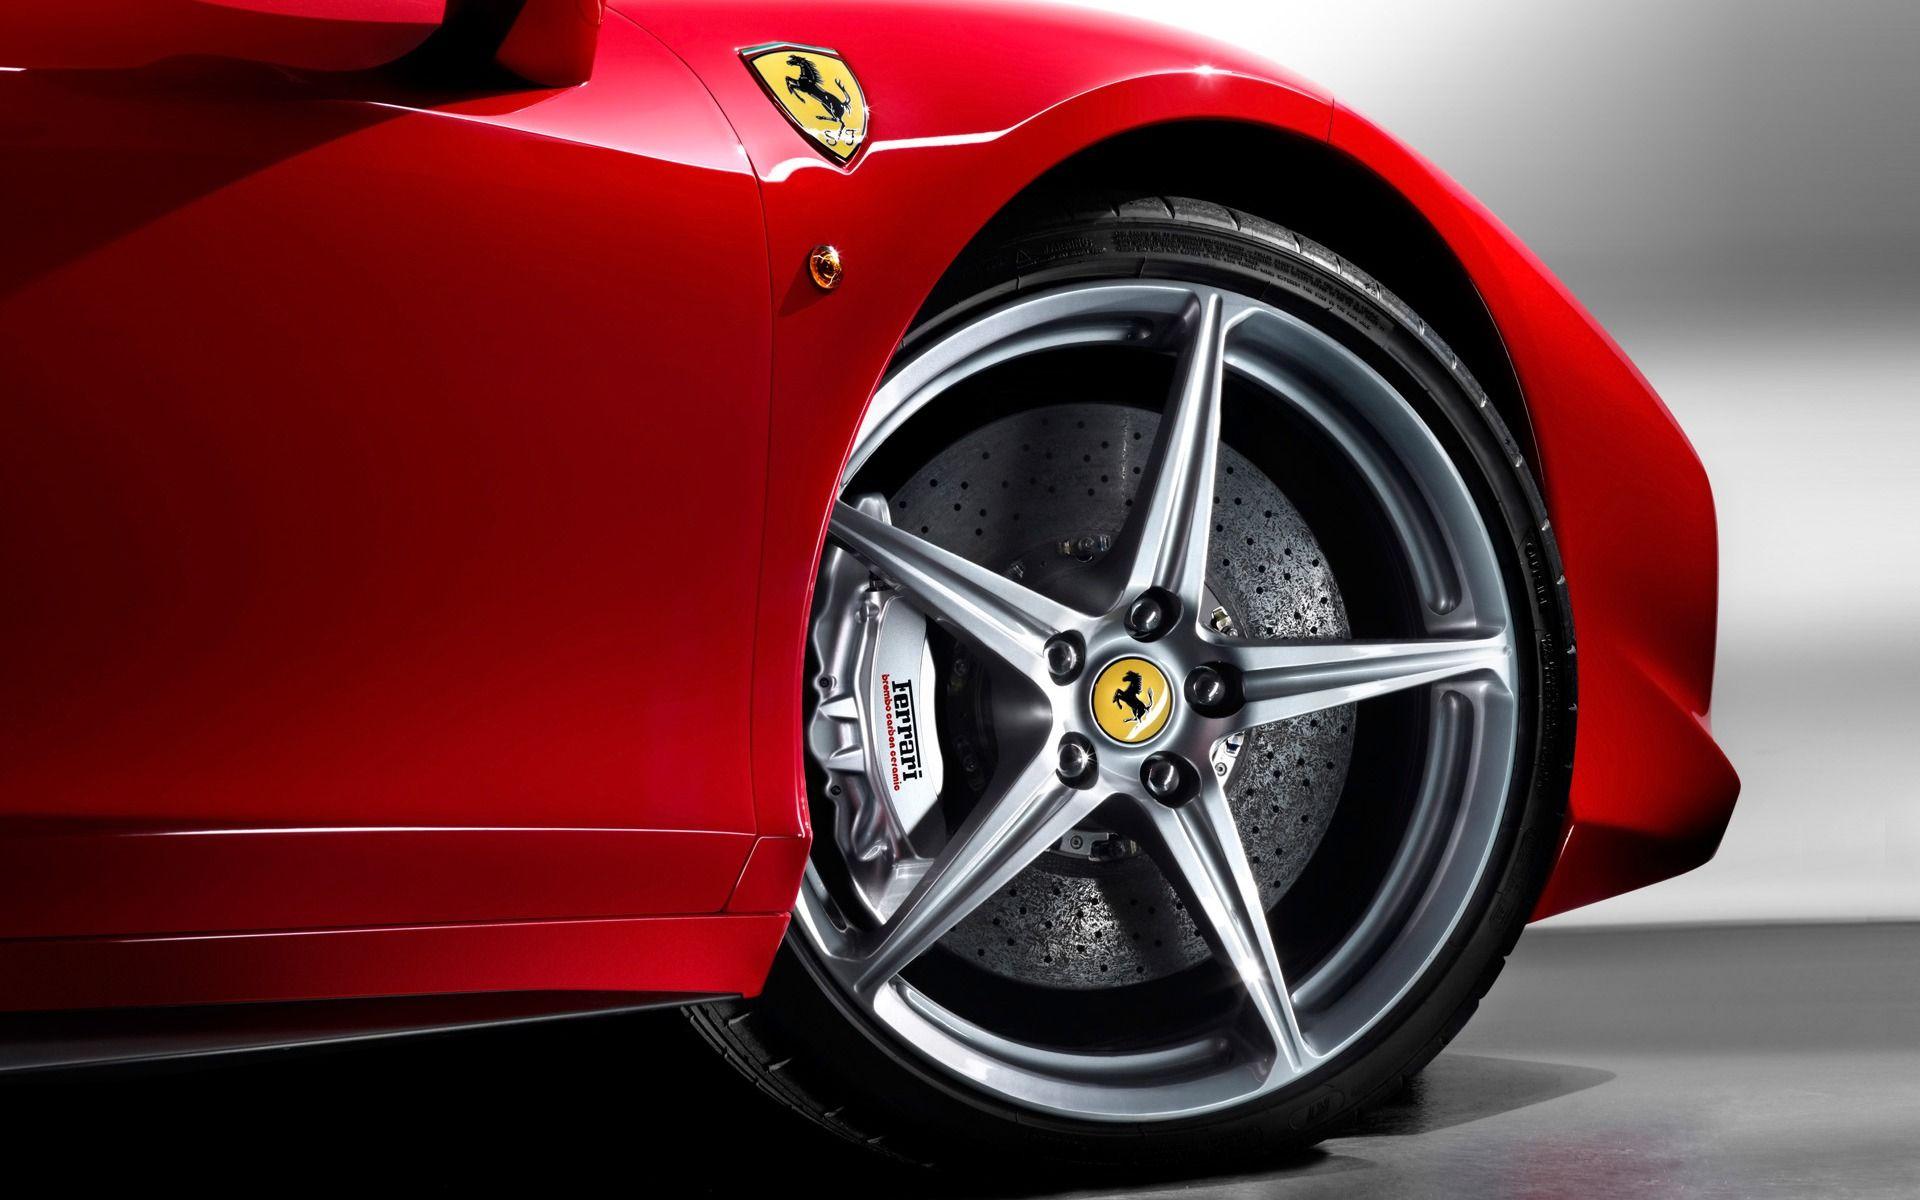 Ferrari rims Wallpapers Ferrari Cars Wallpapers in K format for